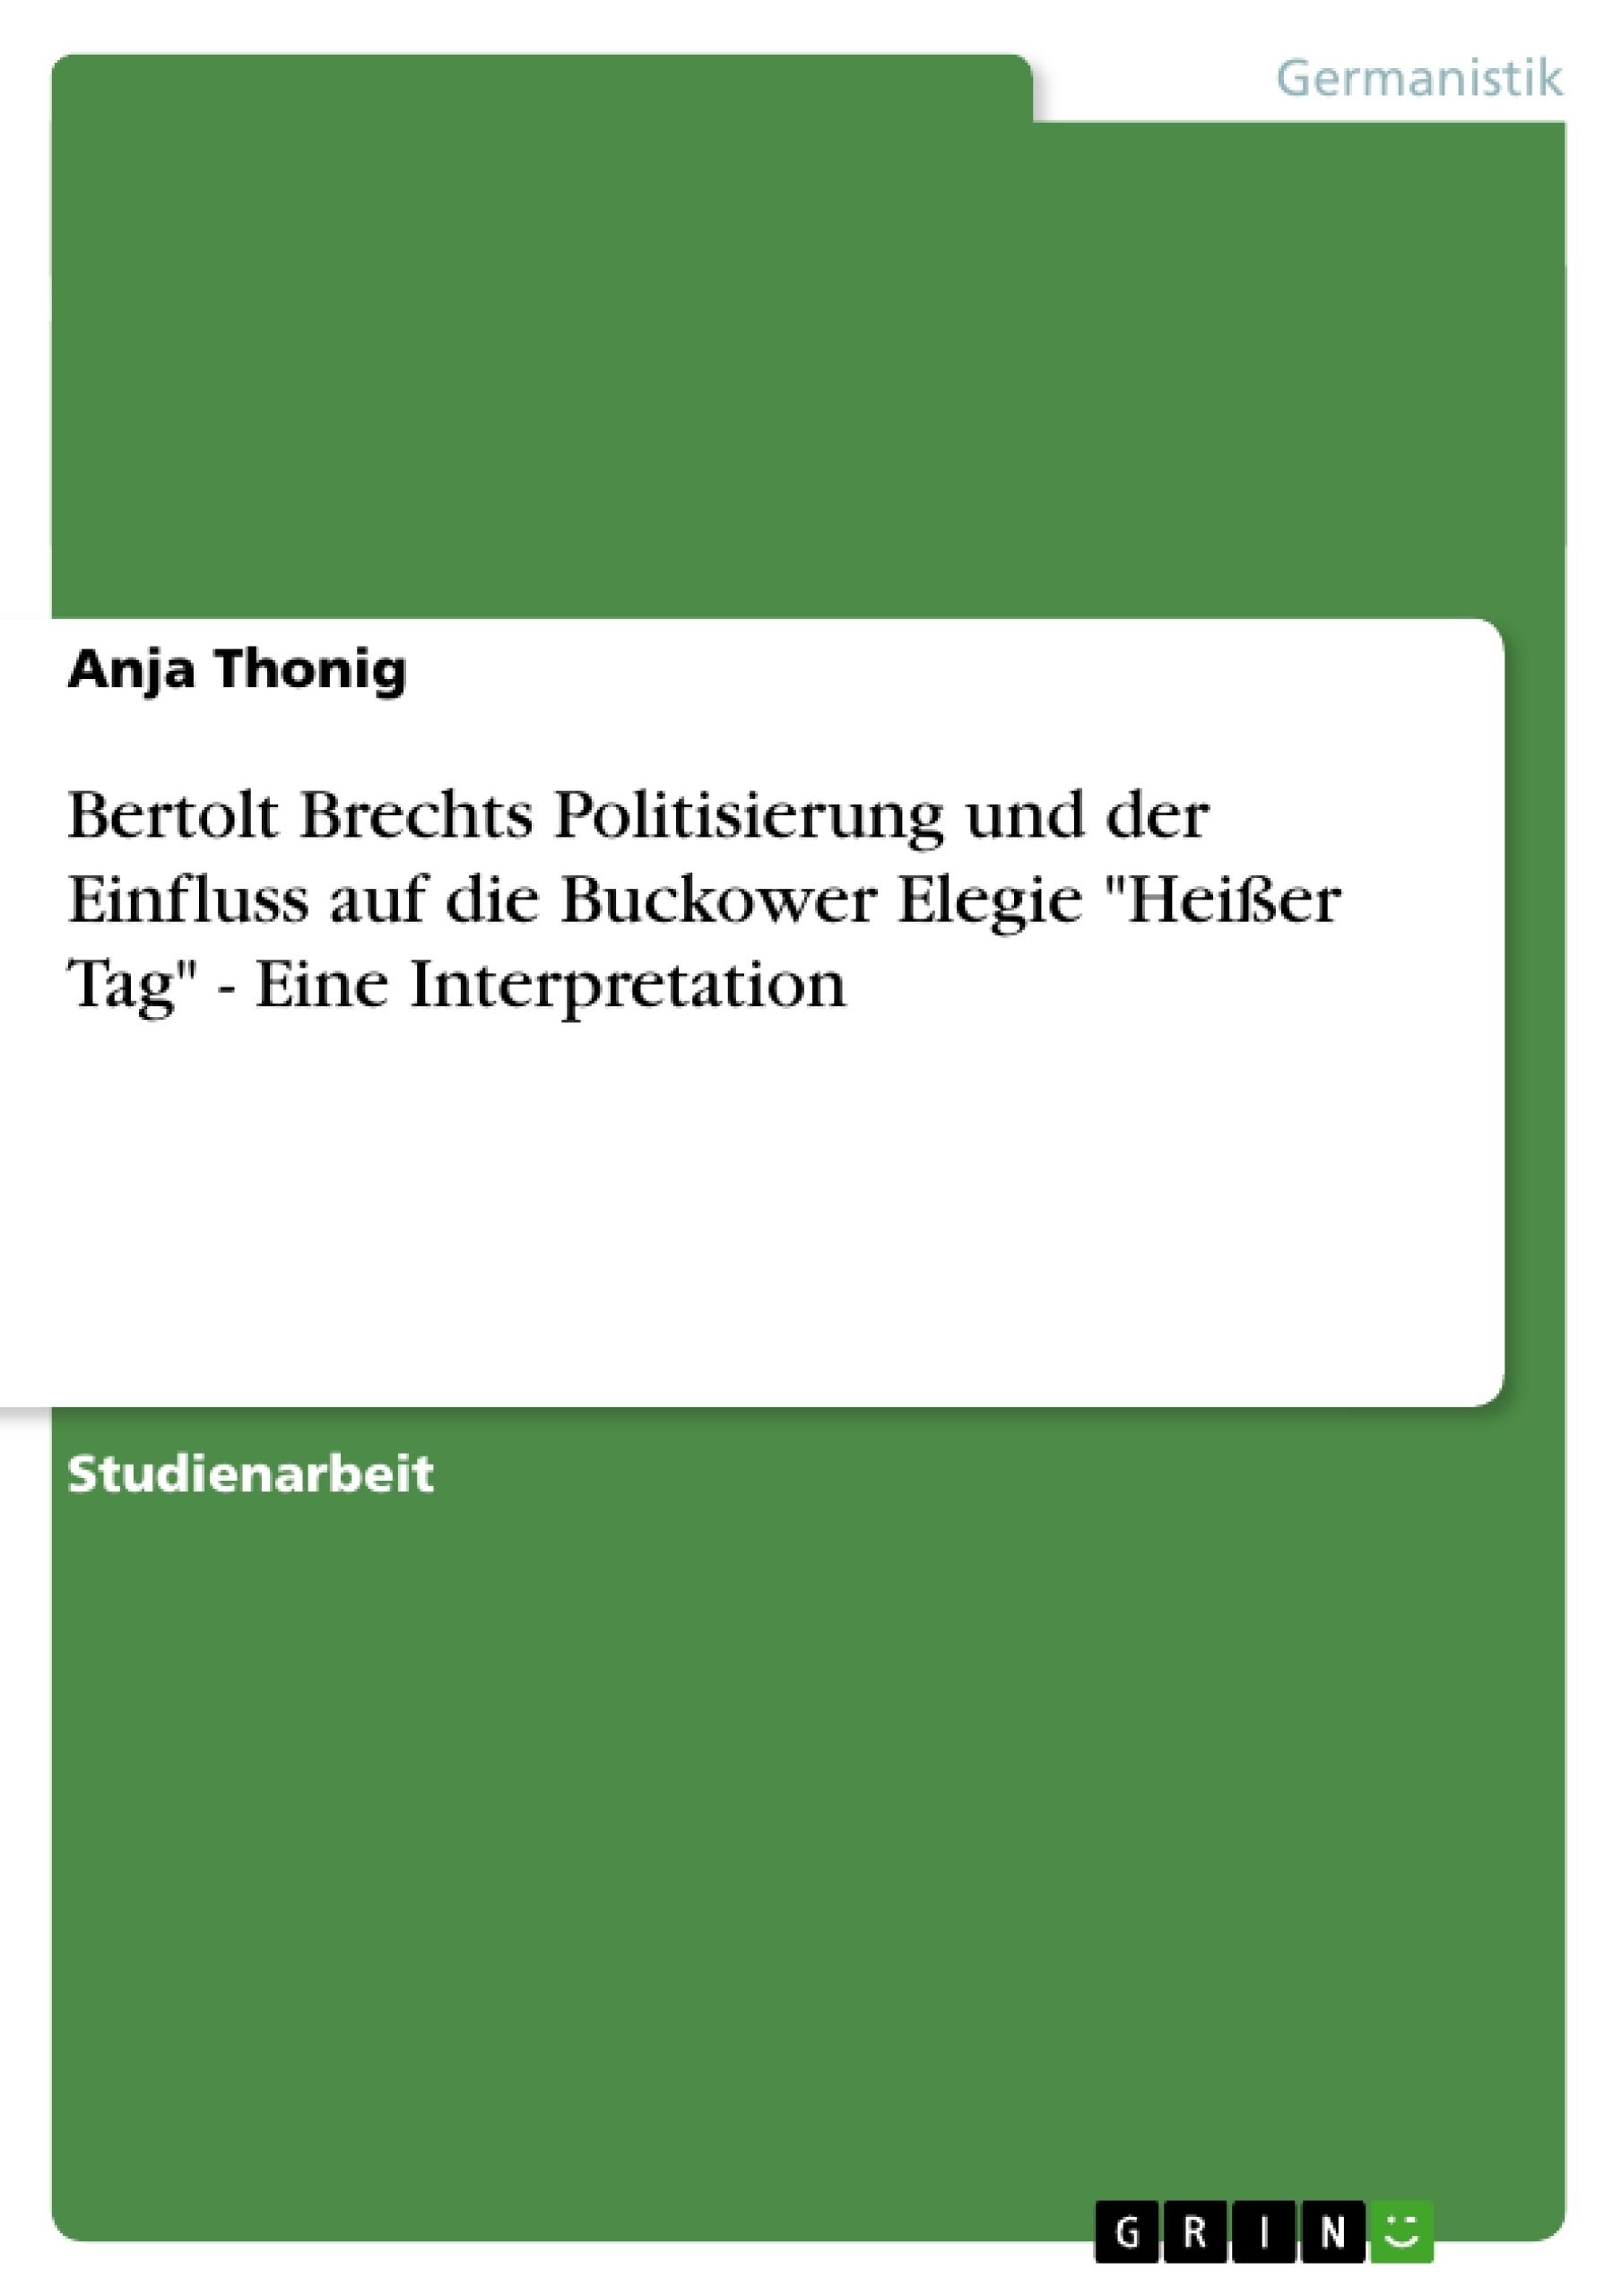 Titre: Bertolt Brechts Politisierung und der Einfluss auf die Buckower Elegie "Heißer Tag" - Eine Interpretation